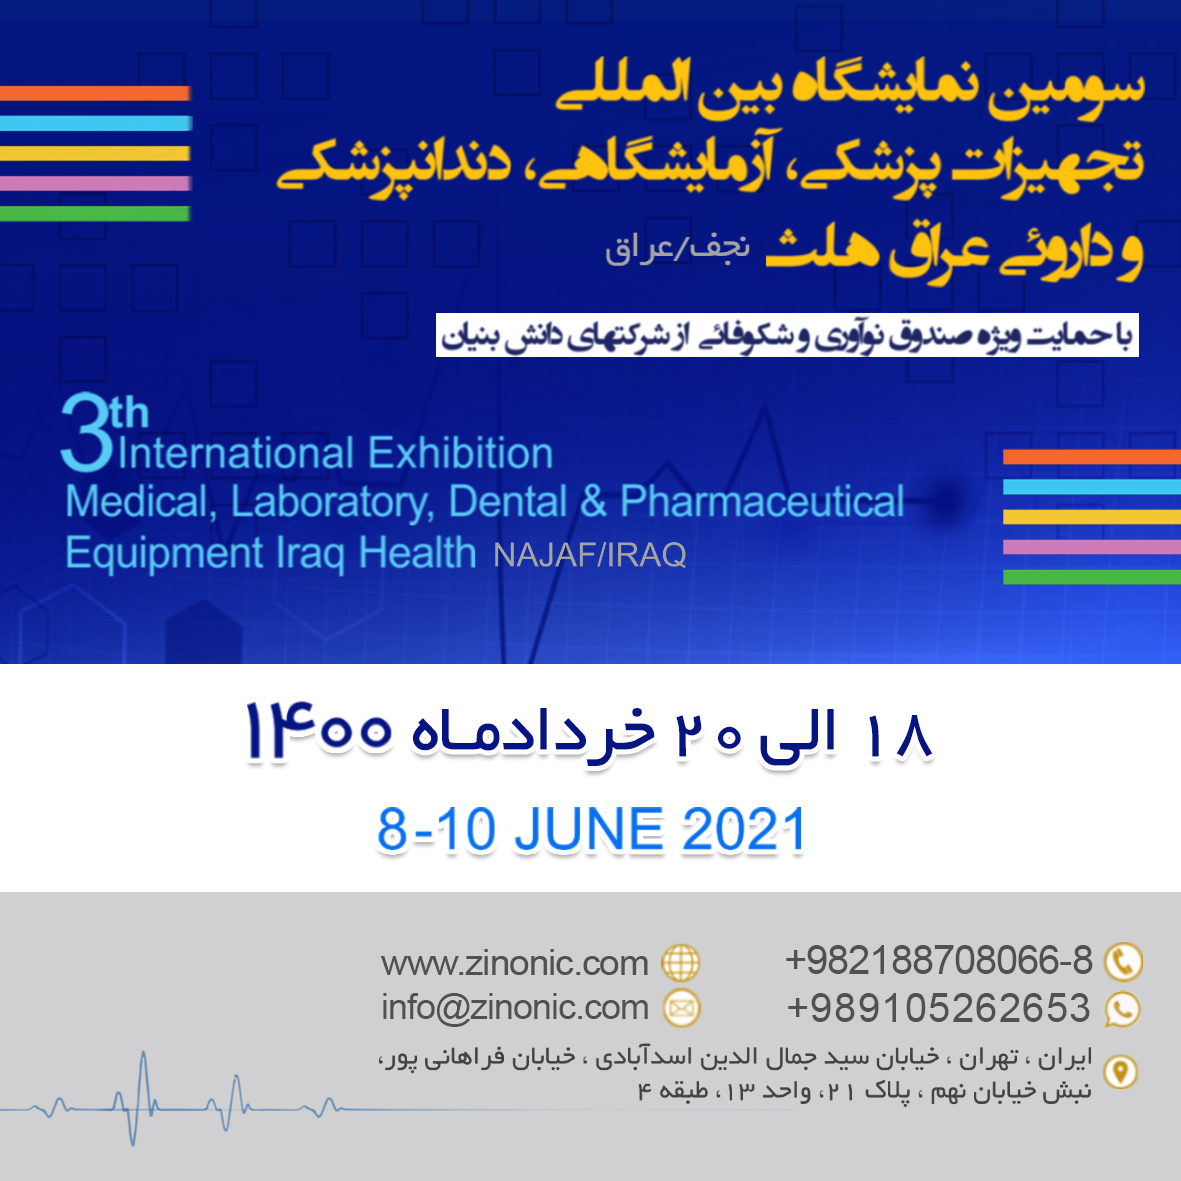  سومین نمایشگاه بیین المللی تجهیزات پزشکی، آزمایشگاهی، دندانپزشکی و داروئی عراق هلث